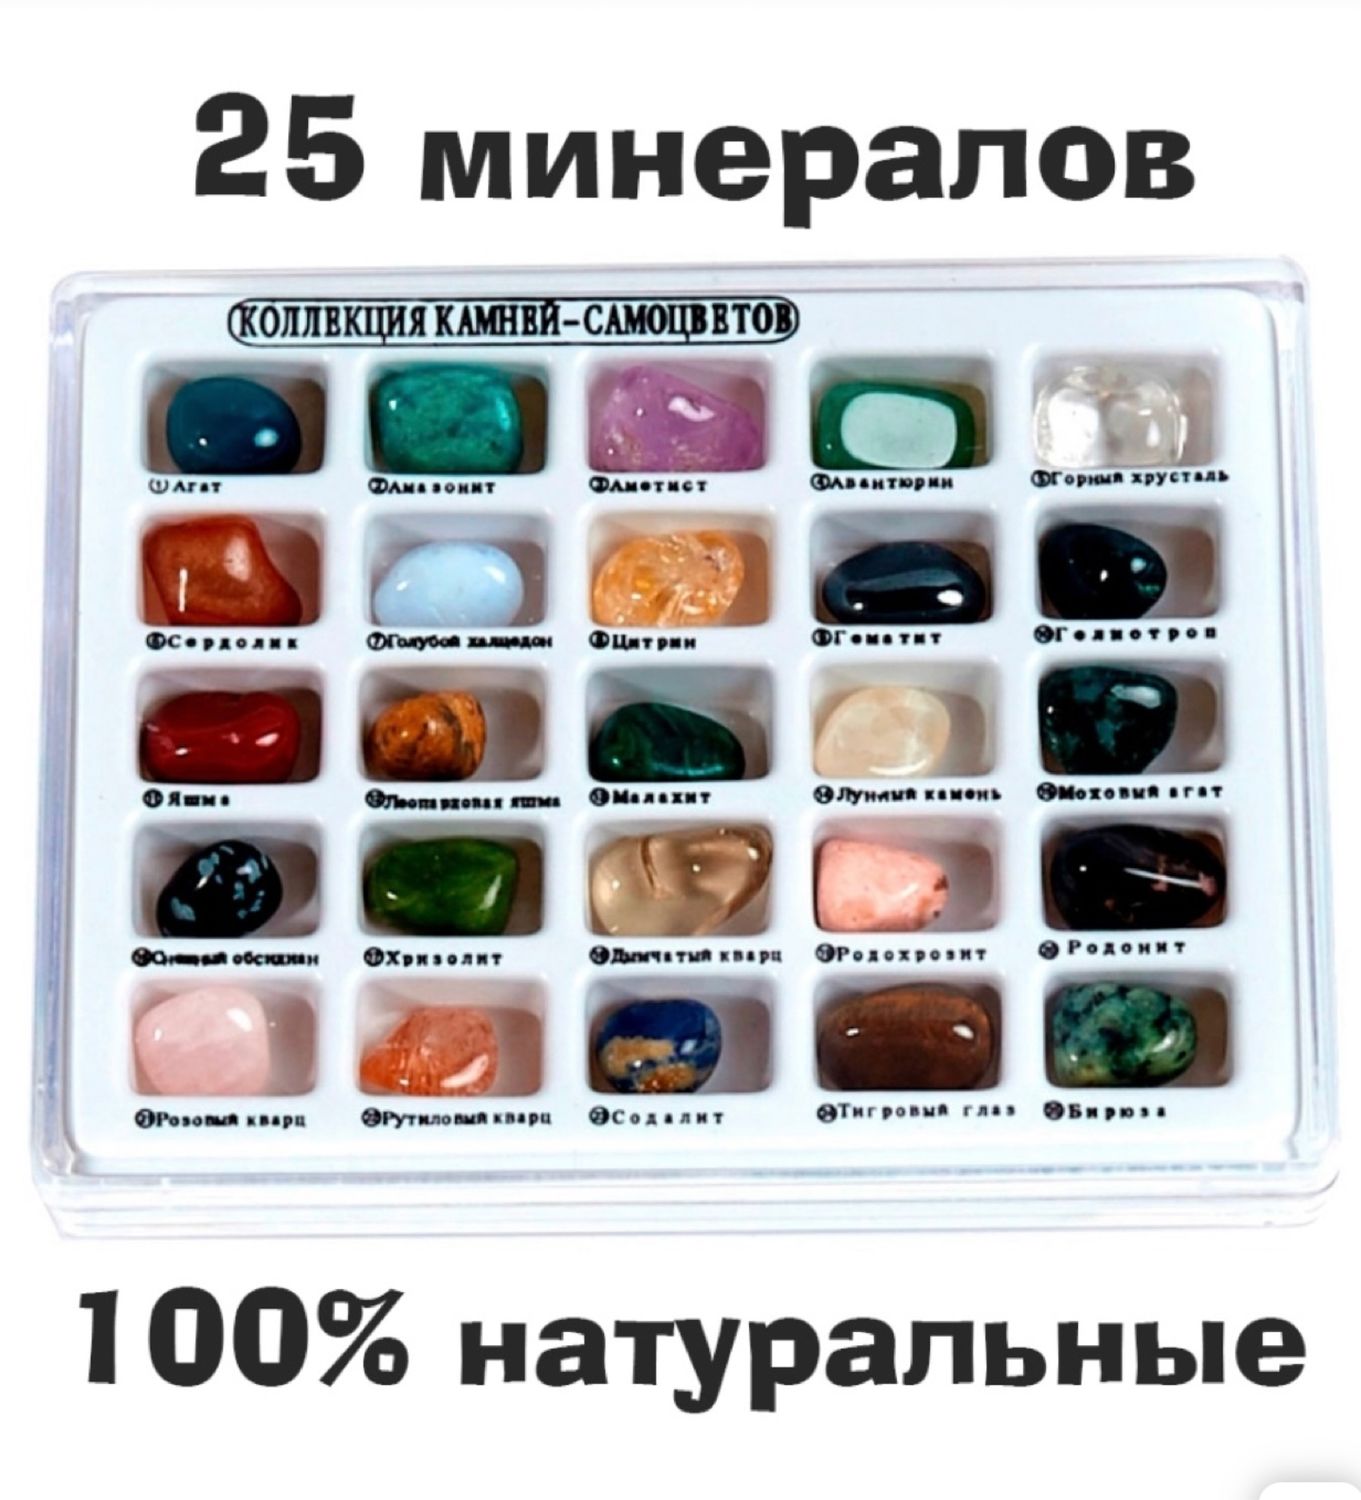 Коллекция самоцветов. Коллекция камней и минералов №2 (1-1,5 см). Коллекция камней самоцветов. Коллекция камней самоцветов 25. Набор минералов Worldwide Gemstones 35 kinds.